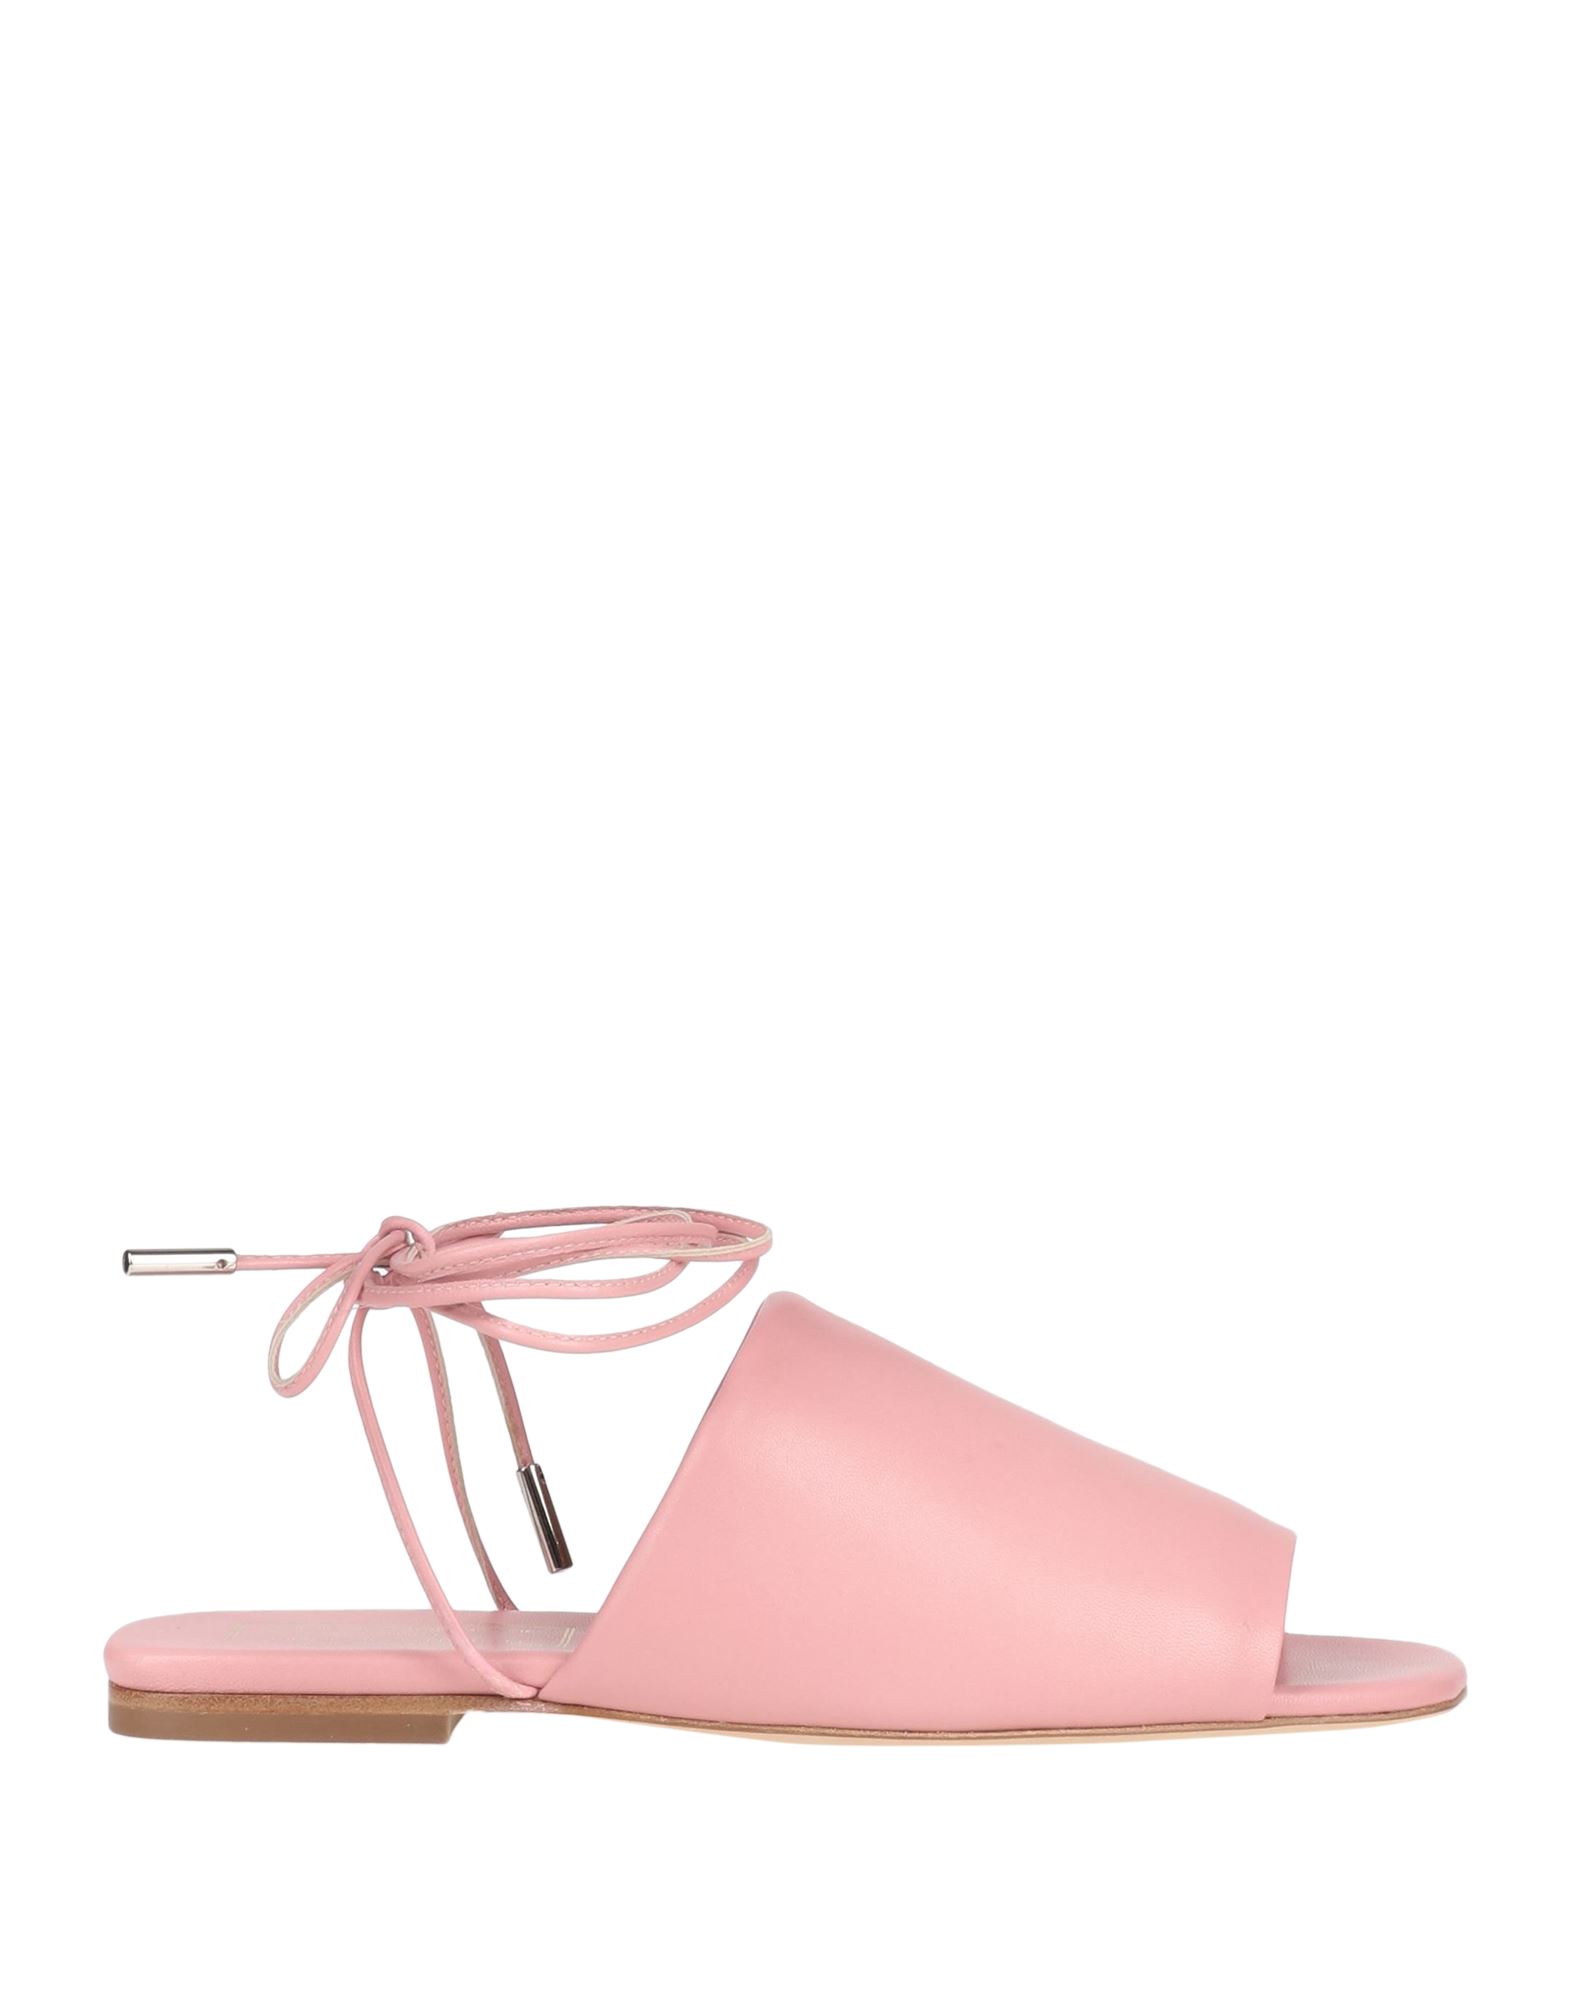 Shop Société Anonyme Woman Sandals Pink Size 7 Soft Leather